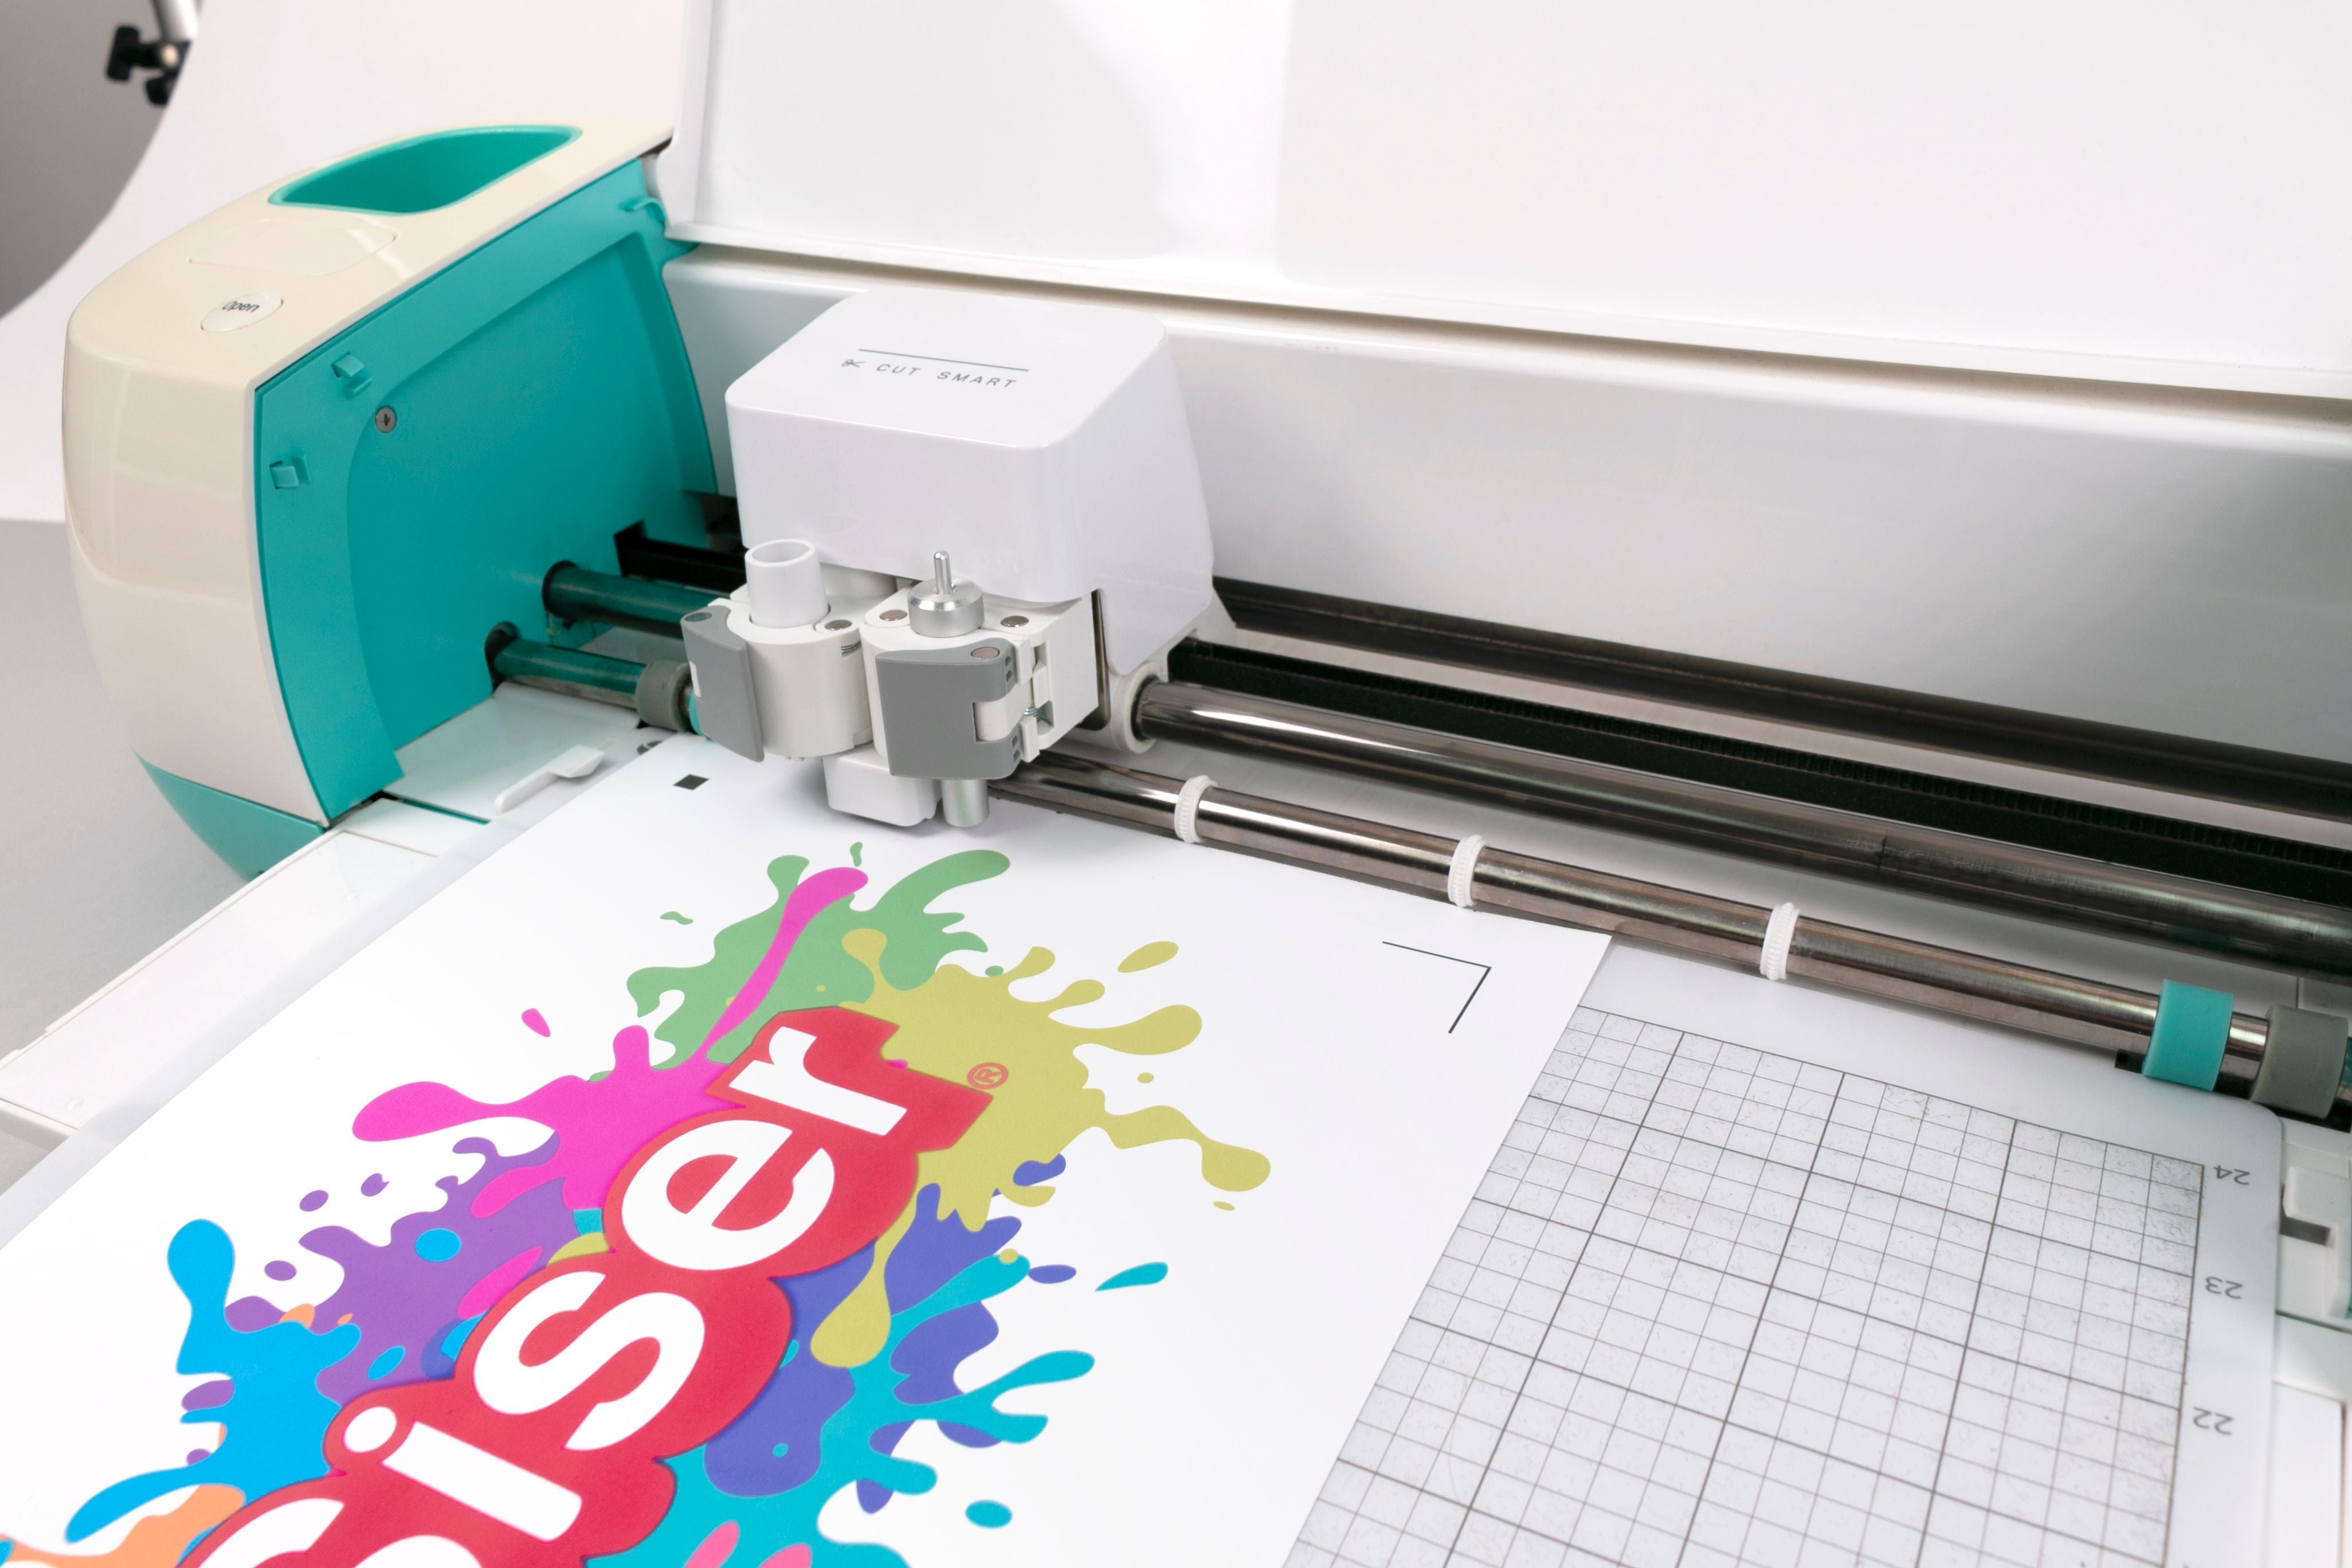 Vinilo textil imprimible inkjet- Turbo Print 4038 H2O de Poli-Tape